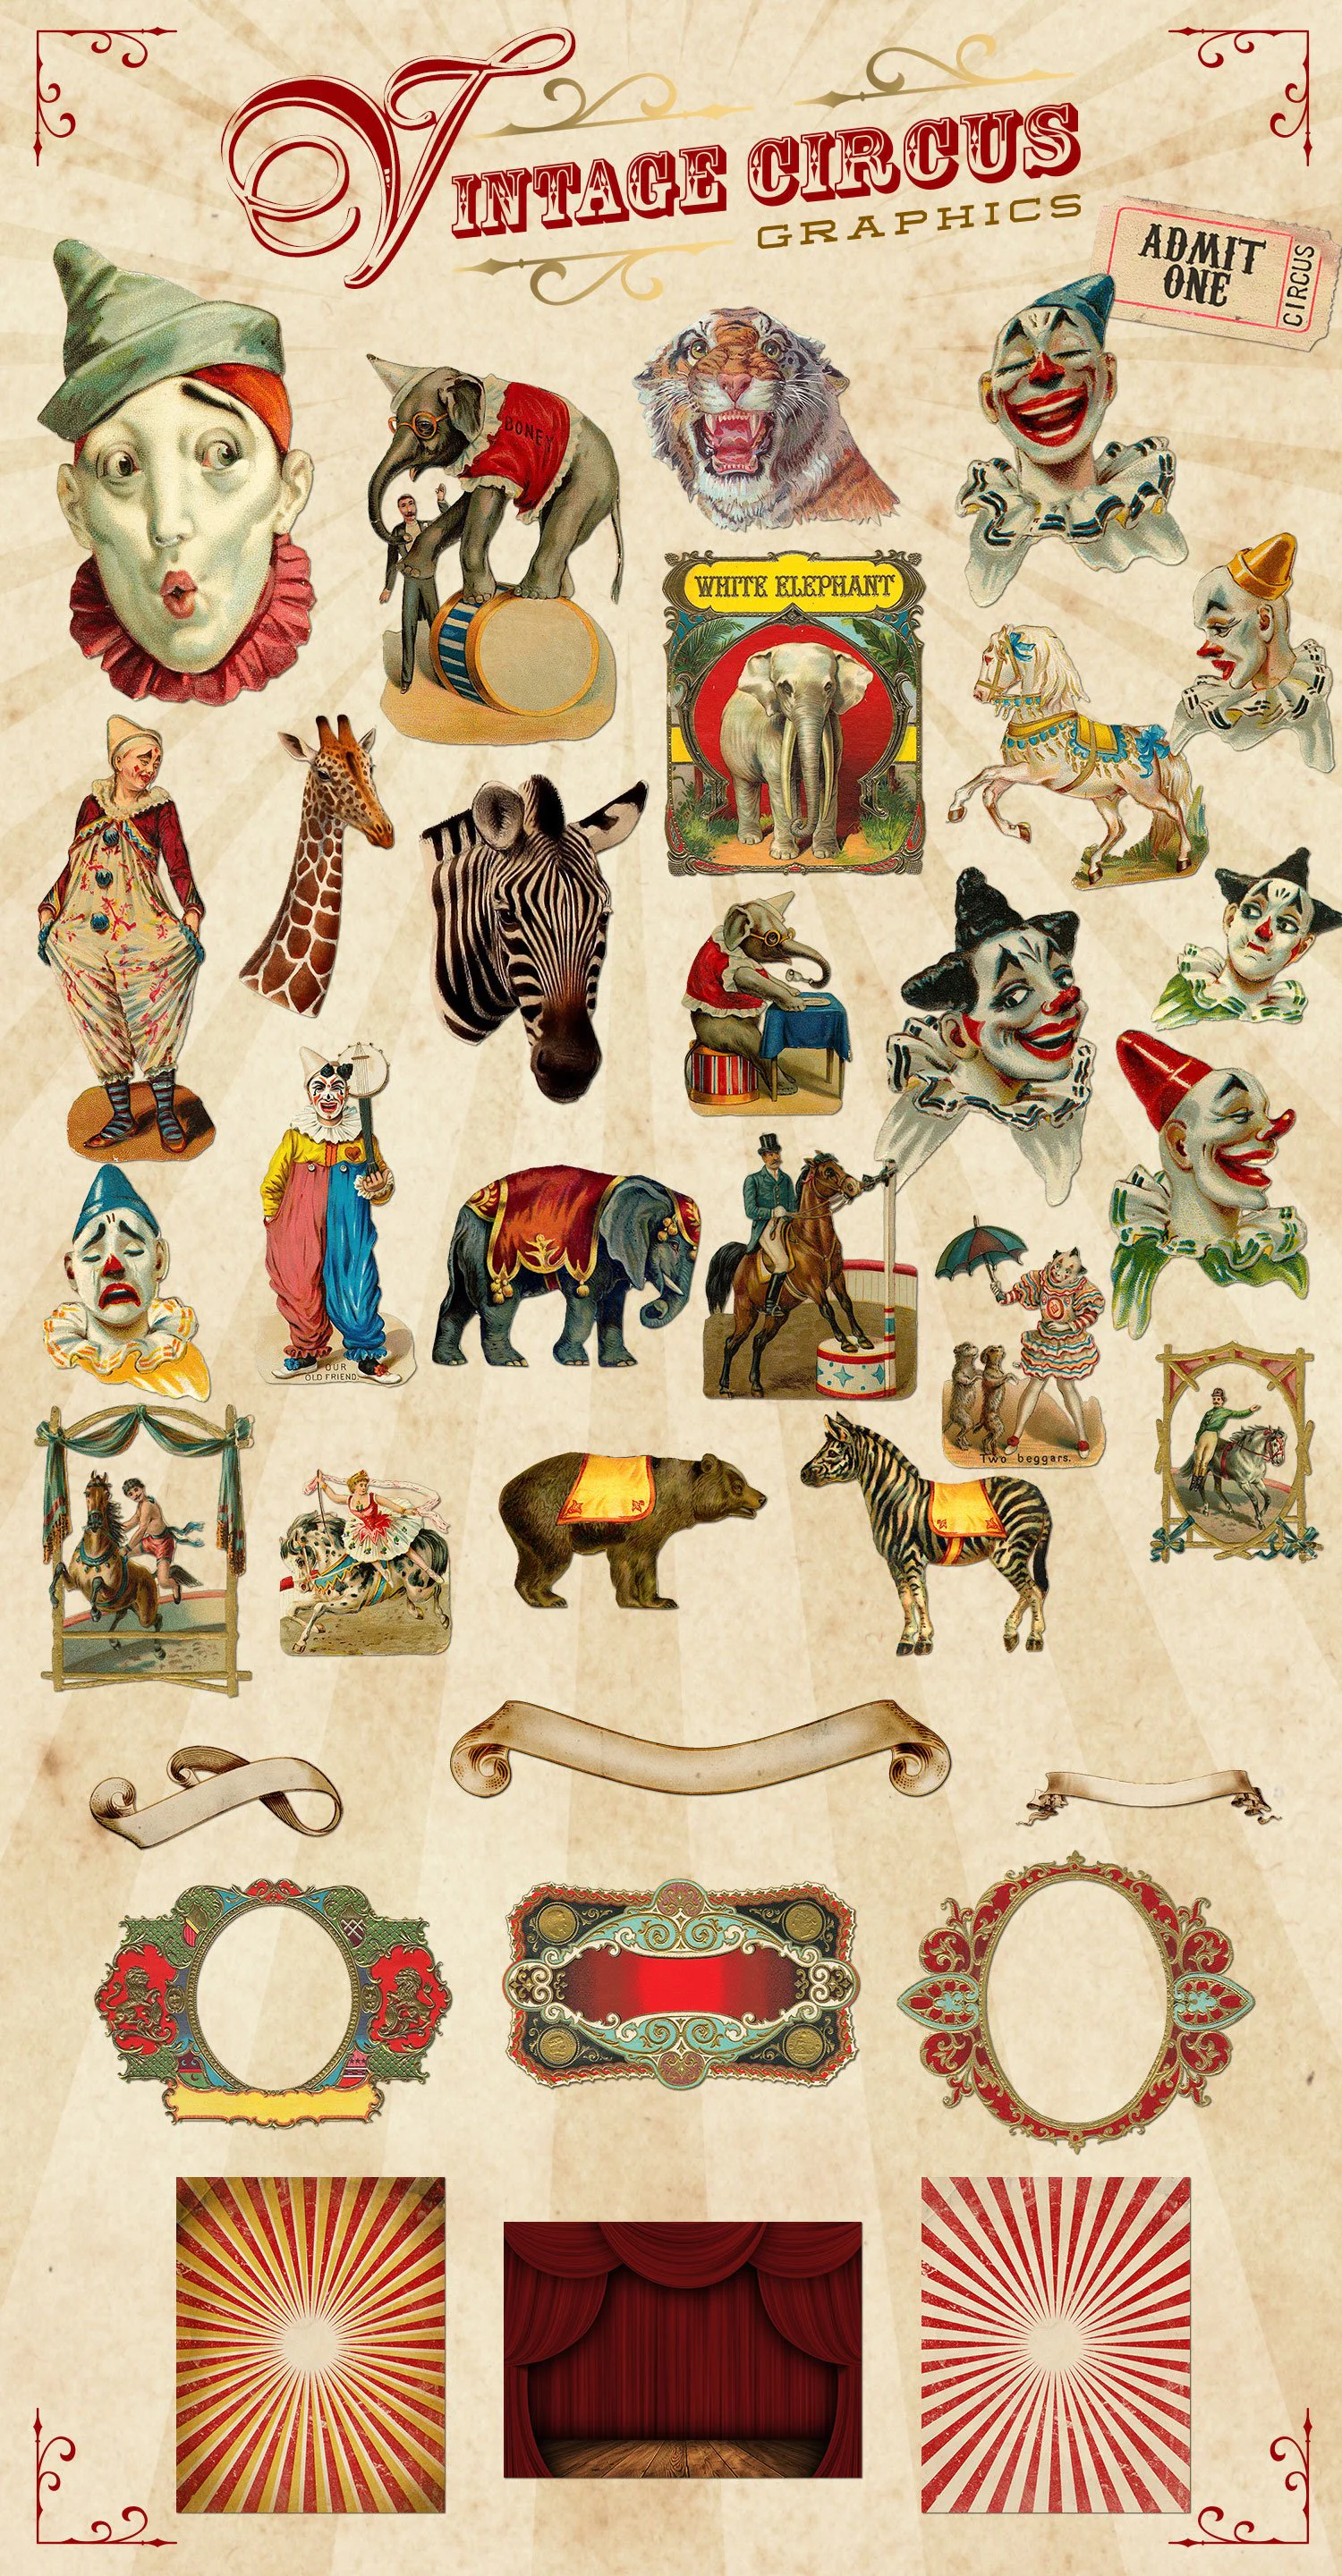 3466 复古老式马戏团小丑动物手绘插画插图拼贴png免抠图片国外设计素材 Vintage Circus Graphics